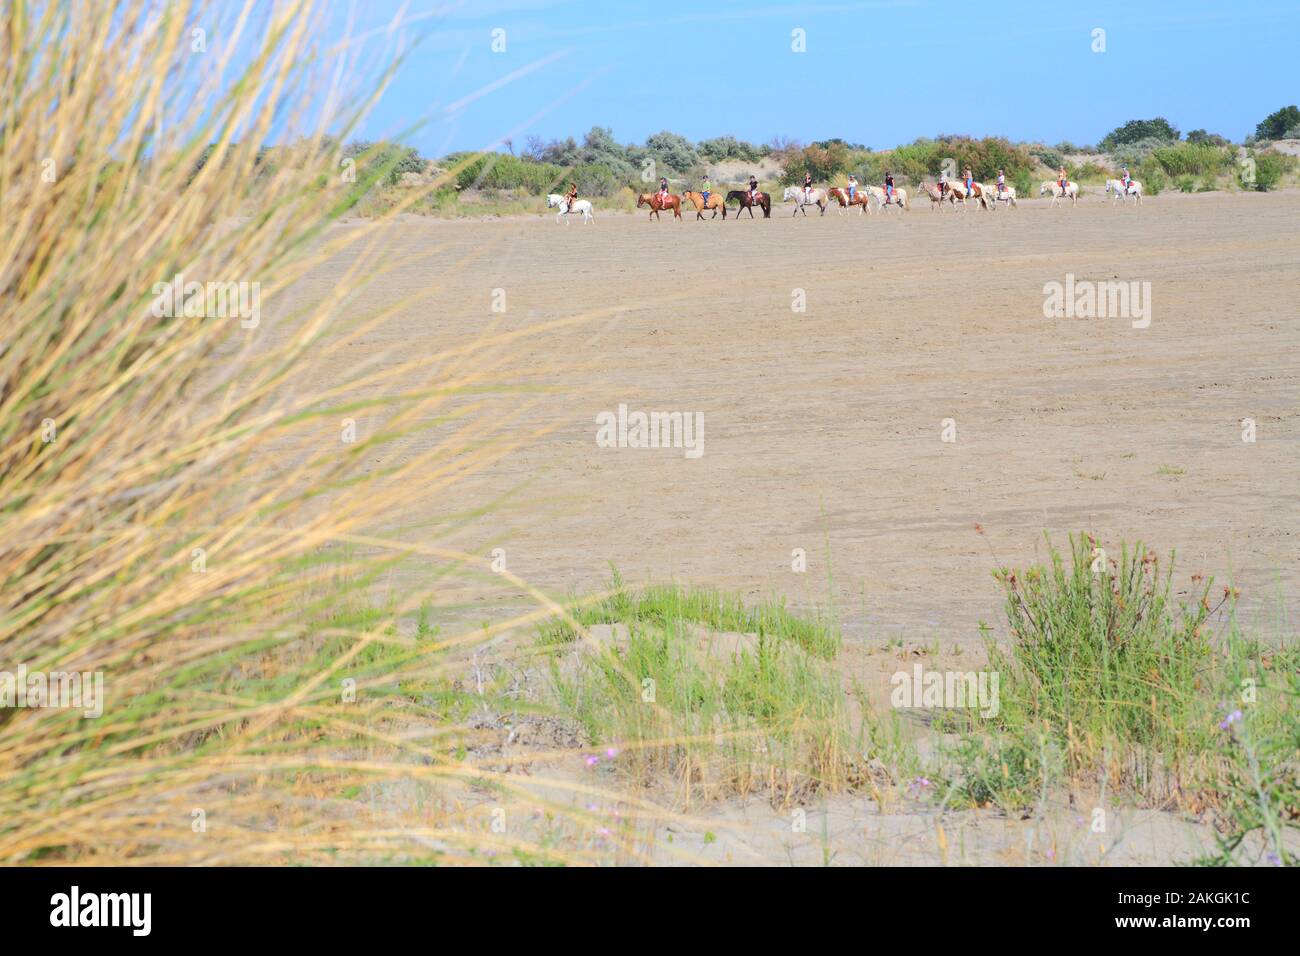 France, Gard, Petite Camargue, Le Grau-du-Roi, Plage de l'Espiguette, horse riding in the dunes Stock Photo